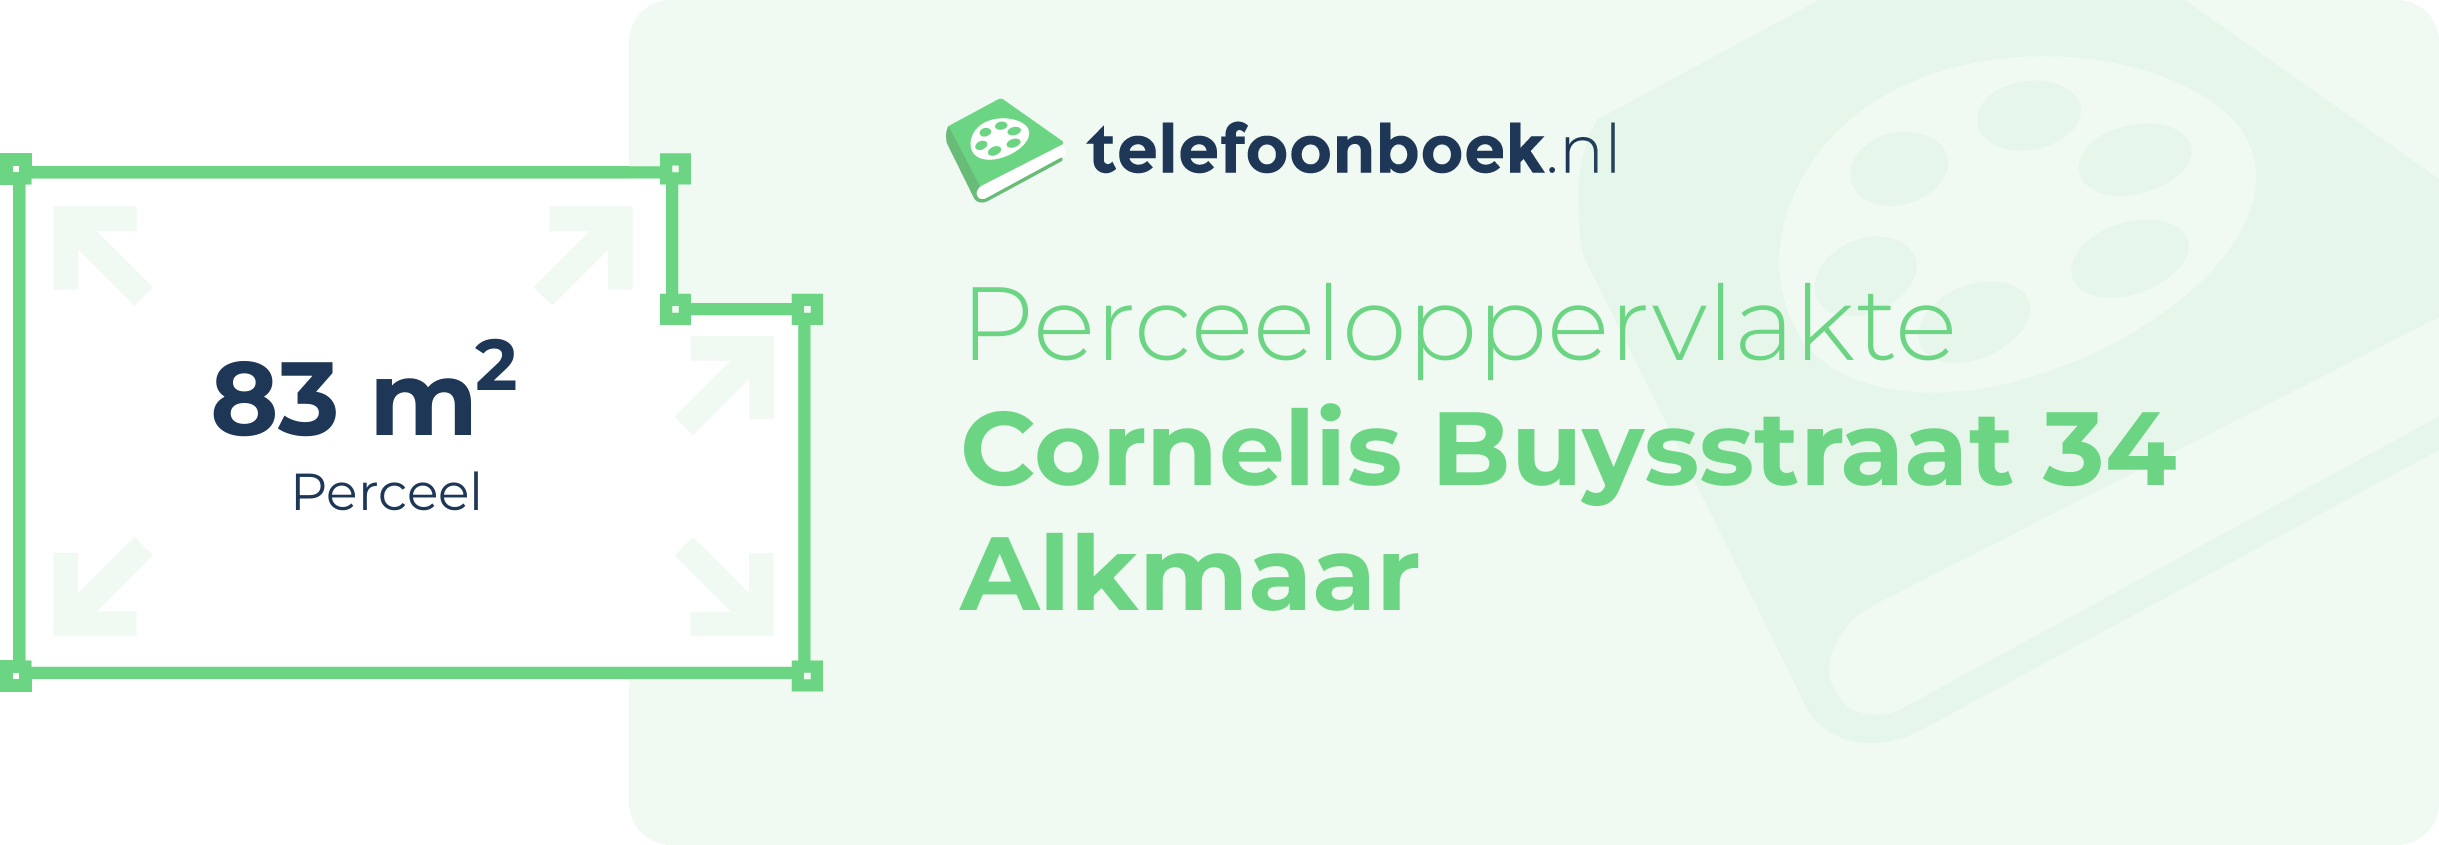 Perceeloppervlakte Cornelis Buysstraat 34 Alkmaar